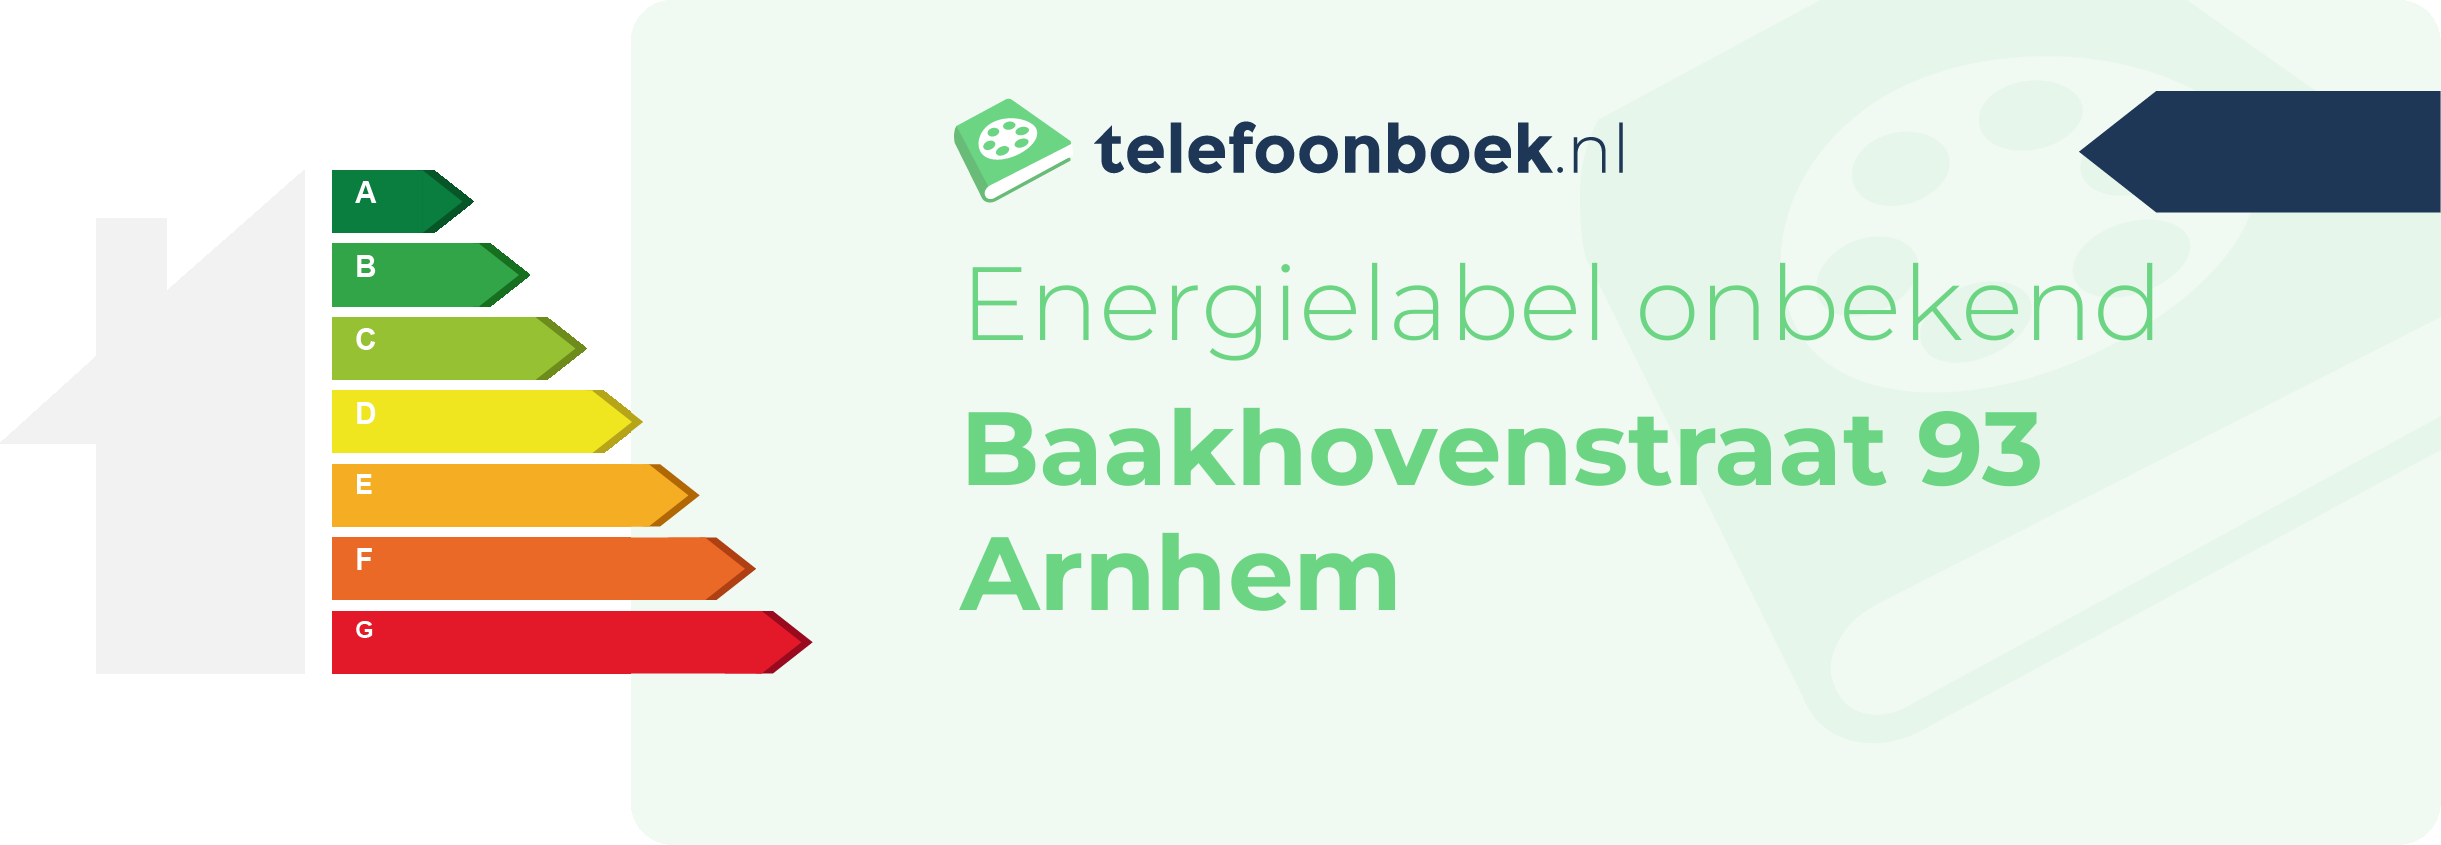 Energielabel Baakhovenstraat 93 Arnhem